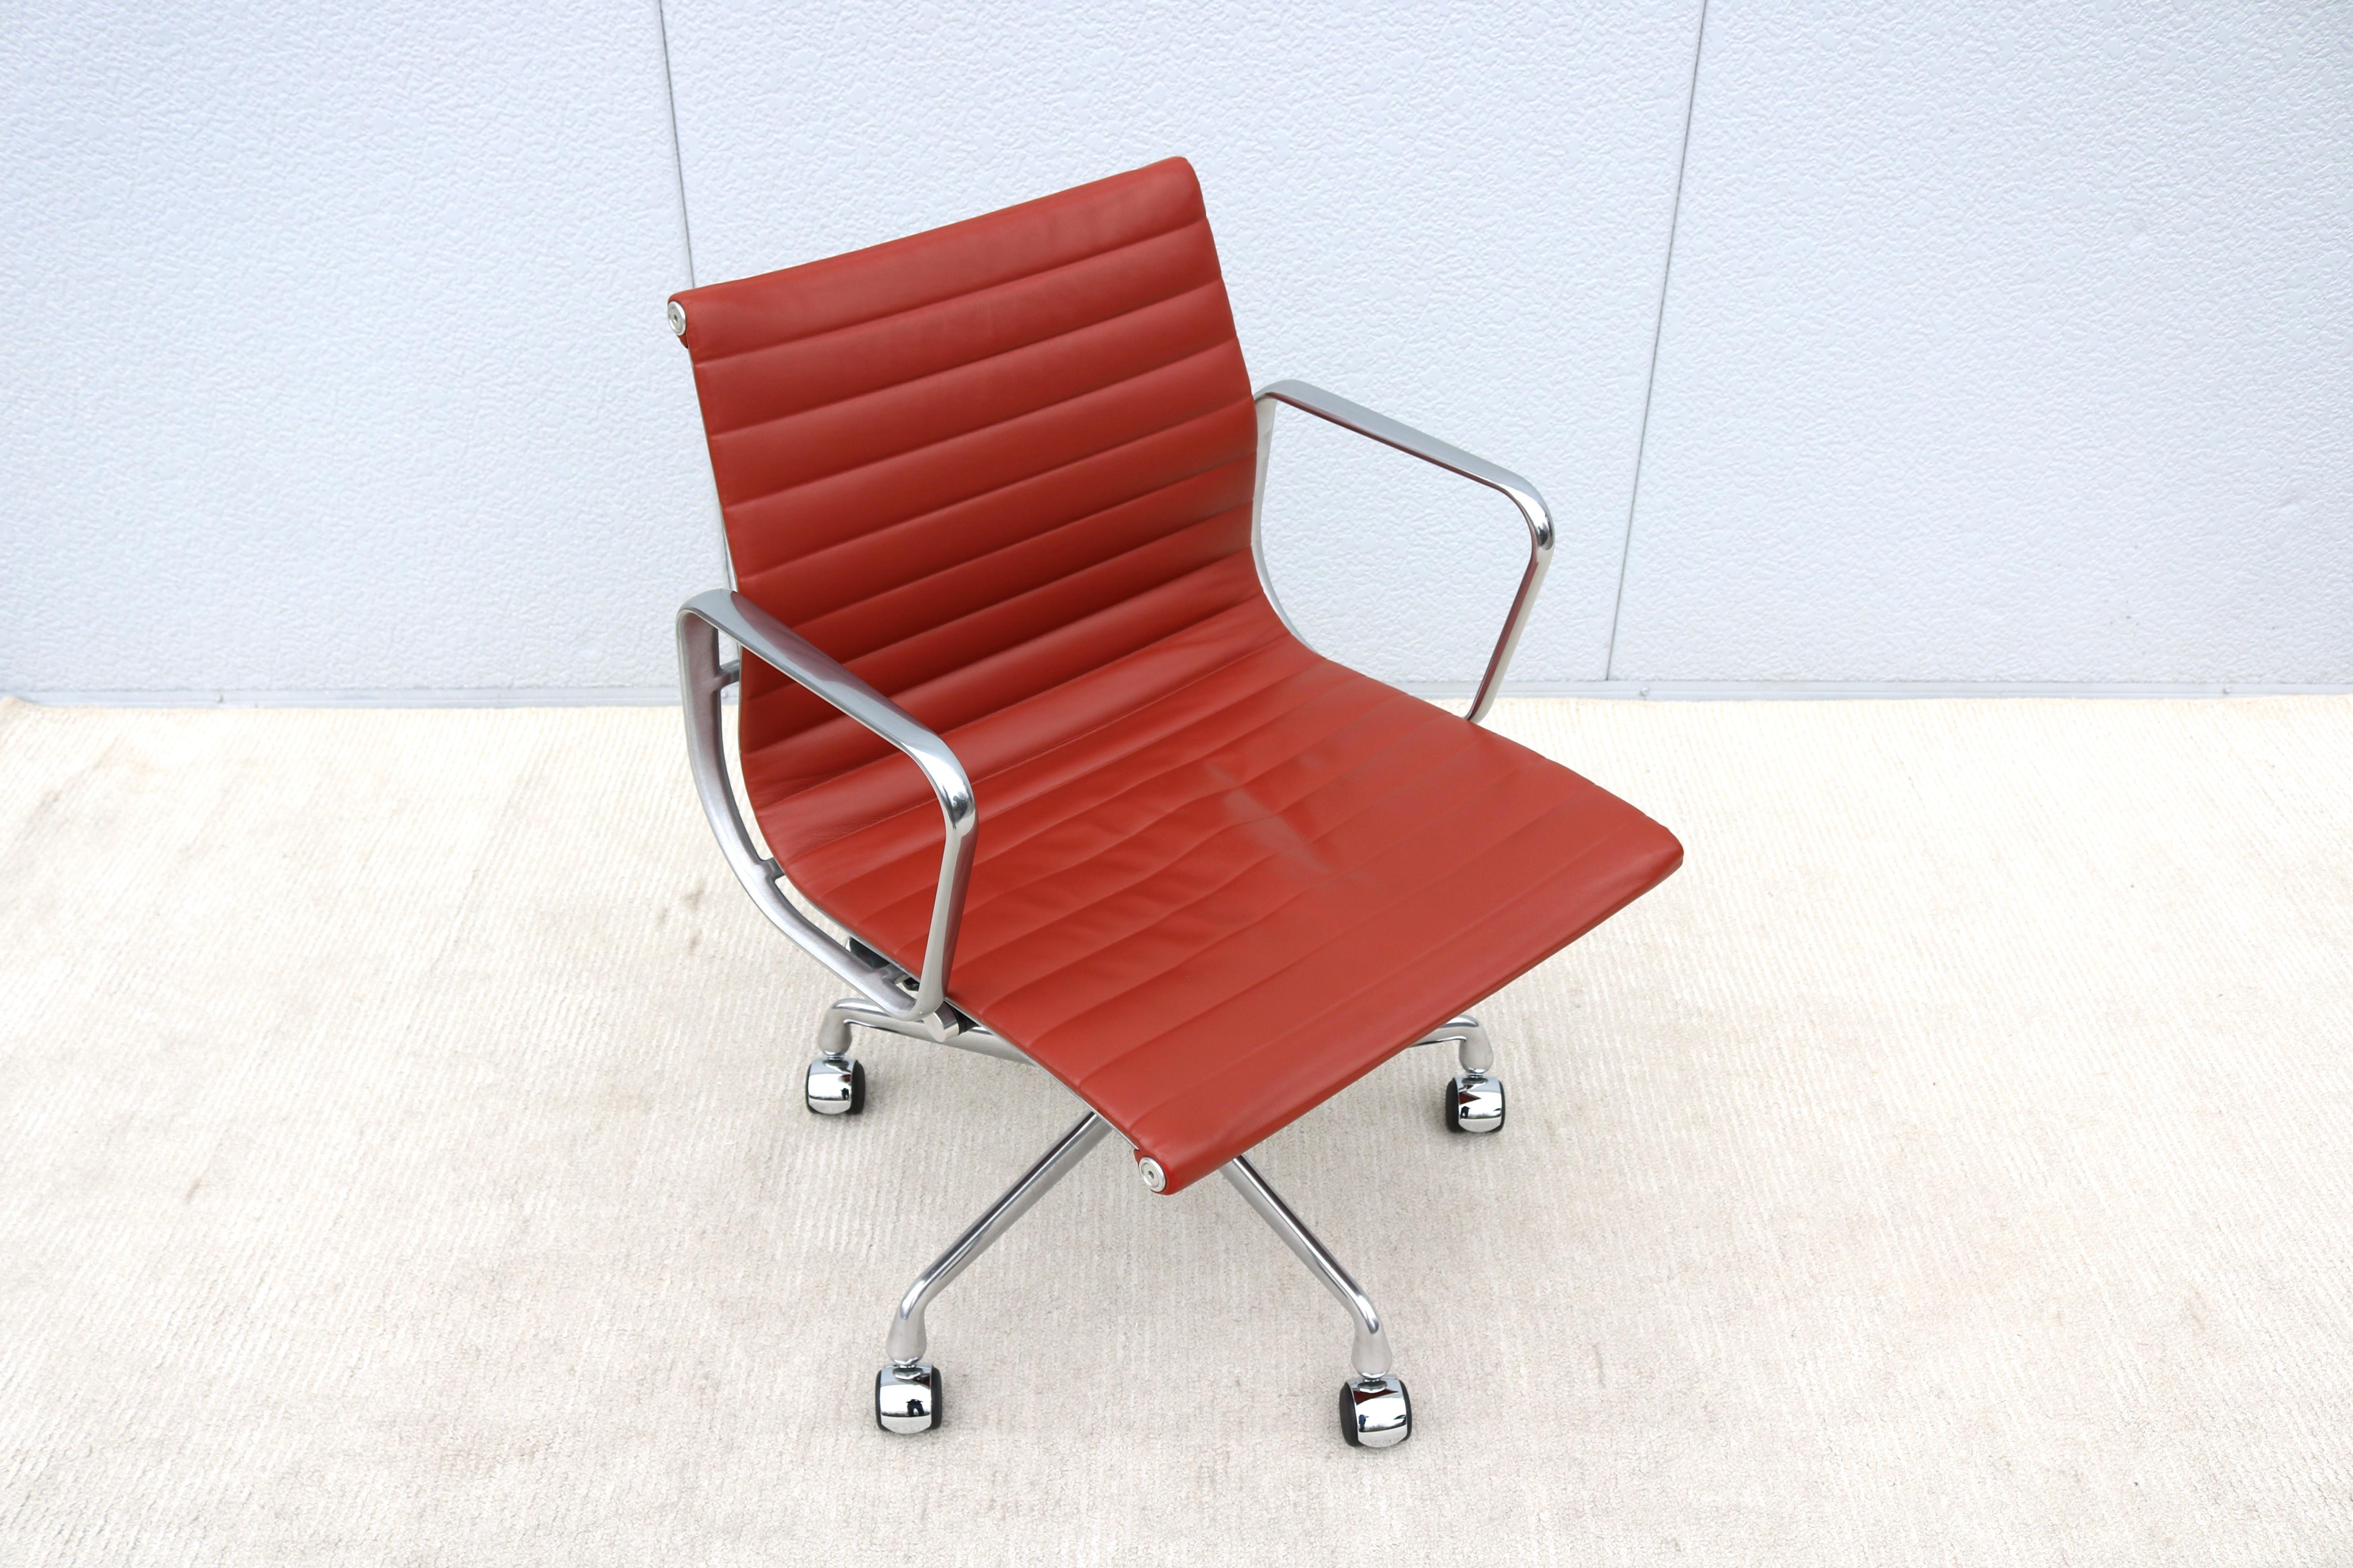 Atemberaubende authentische Mitte des Jahrhunderts modernen Eames Aluminium Gruppe Management Stuhl.
Ein zeitloser Designklassiker mit innovativen Komfortmerkmalen.
Einer der beliebtesten Stühle von Herman Miller wurde 1958 von Charles und Ray Eames